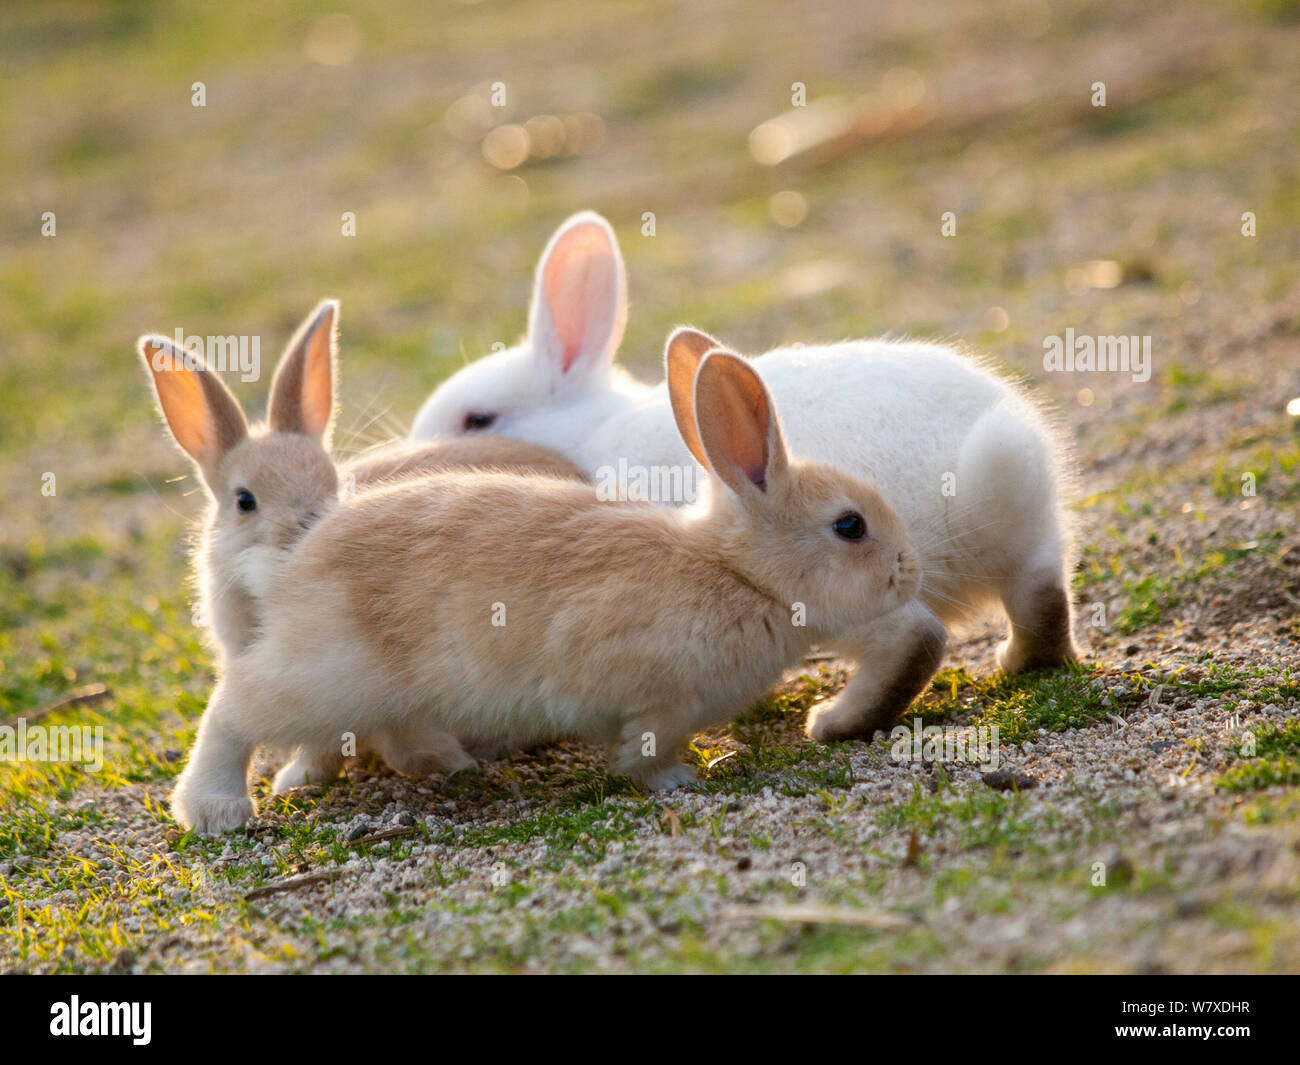 Les sauvages lapin (Oryctolagus cuniculus) bébés chassant l'autre, l'Île Okunojima, également connu sous le nom de Rabbit Island, Hiroshima, Japon. Banque D'Images